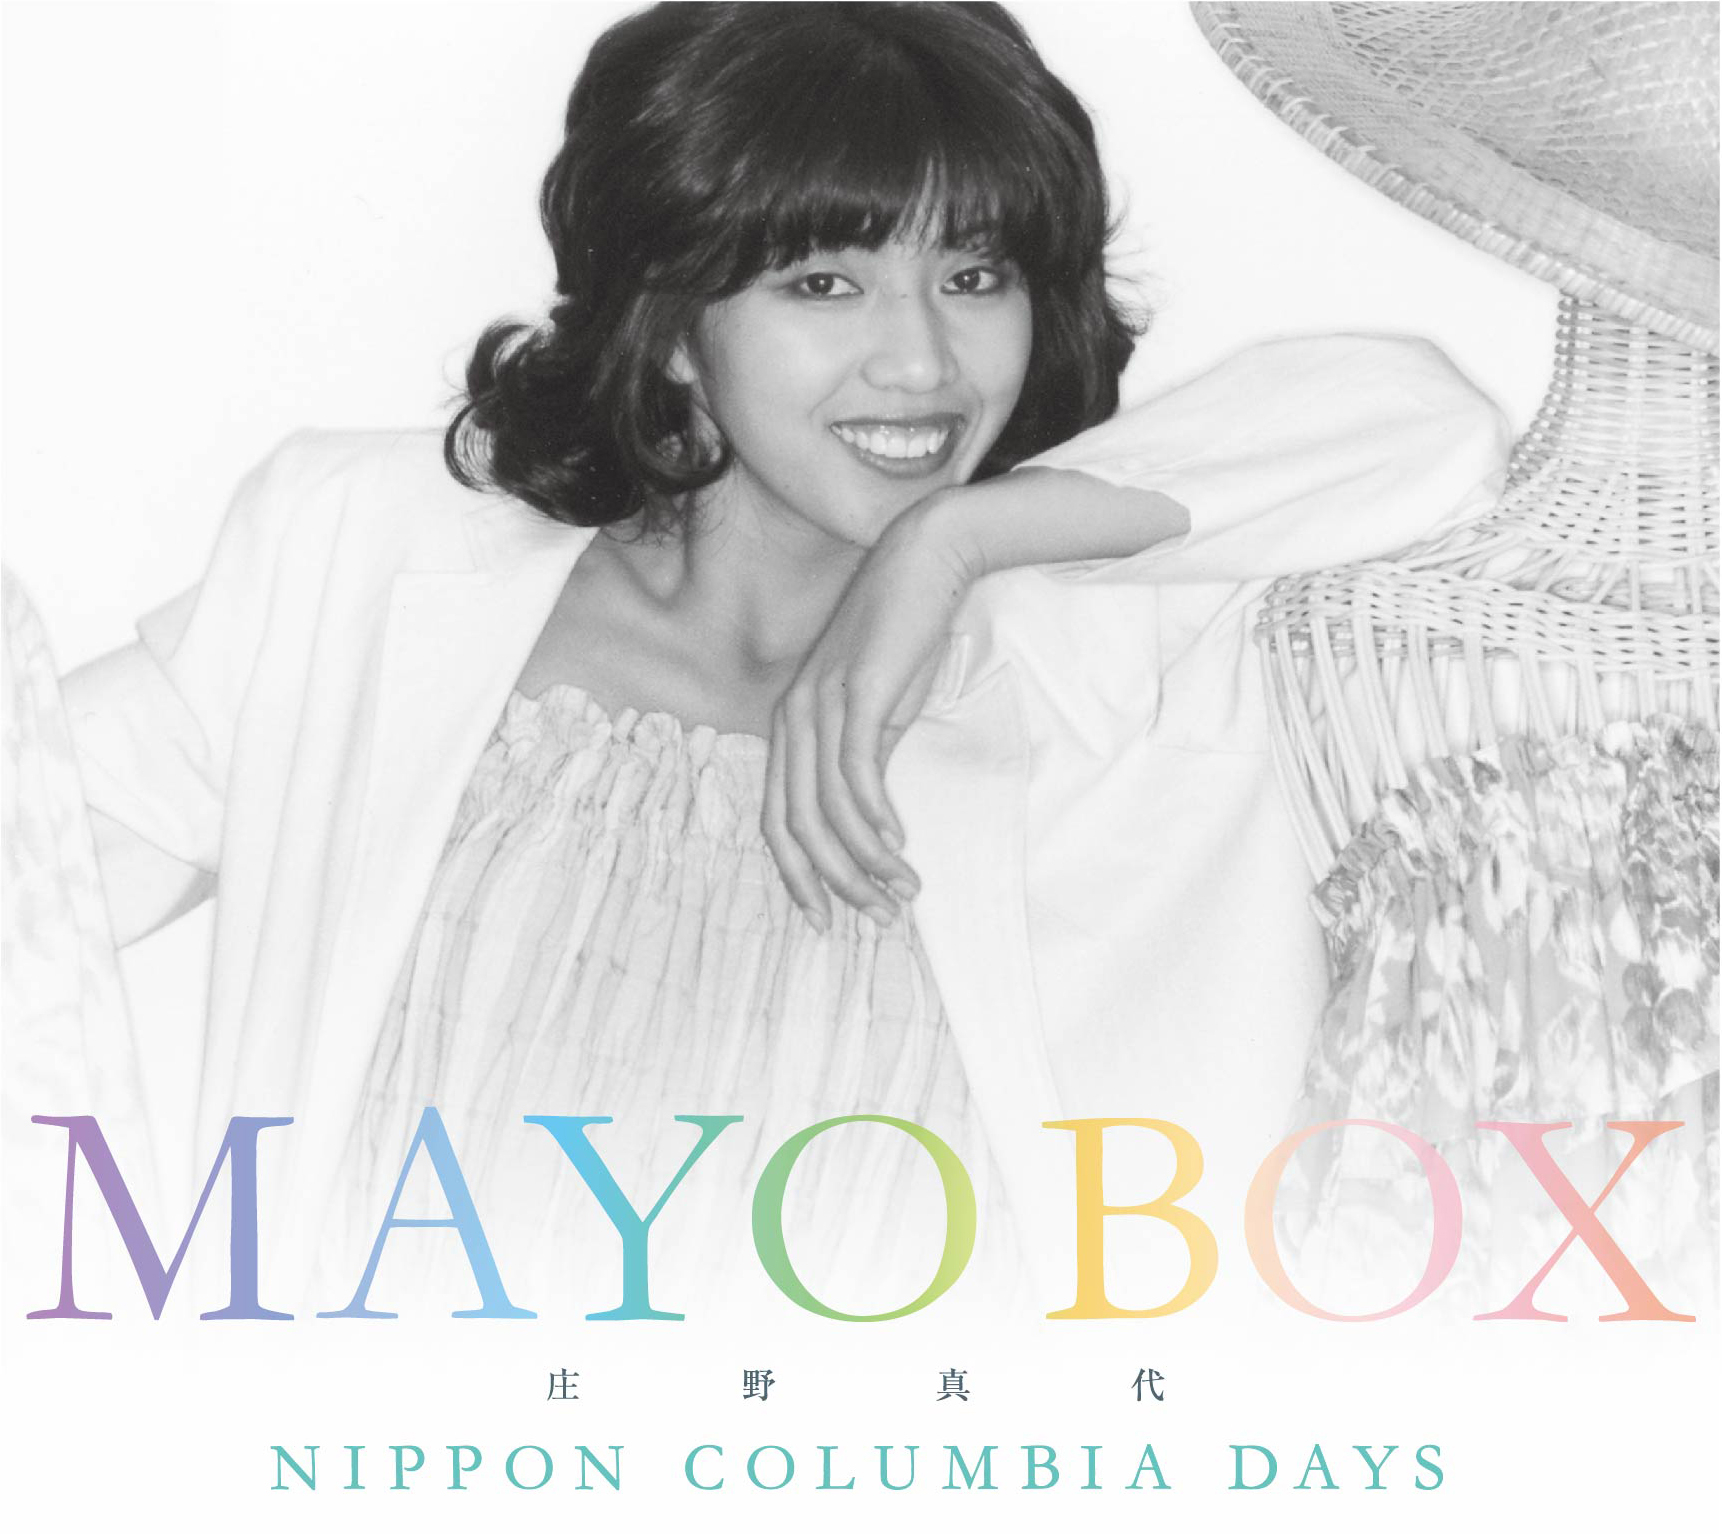 デビュー45周年記念 MAYO BOX～NIPPON COLUMBIA DAYS～ - 庄野真代 